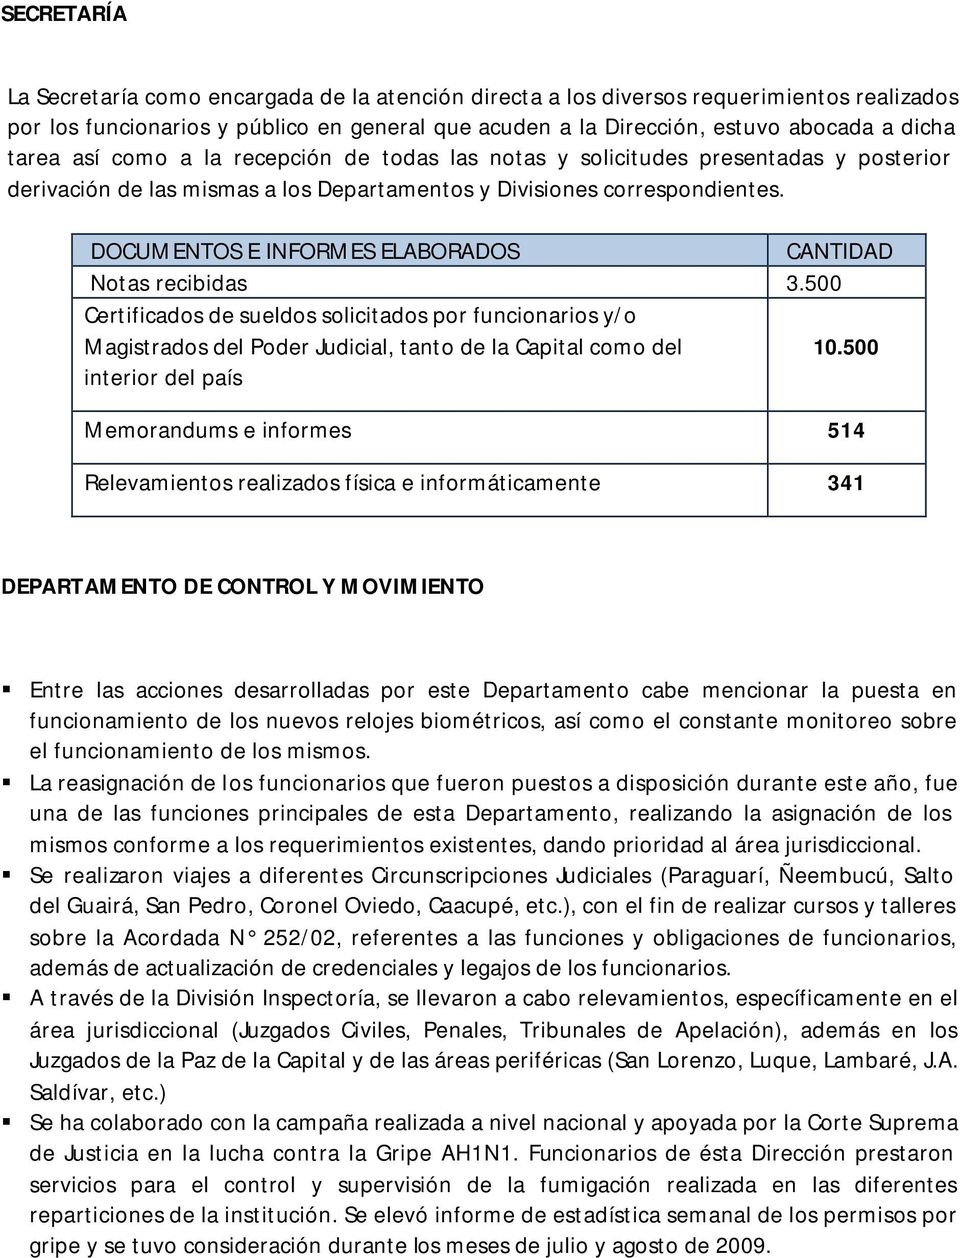 DOCUMENTOS E INFORMES ELABORADOS Notas recibidas 3.500 Certificados de sueldos solicitados por funcionarios y/o Magistrados del Poder Judicial, tanto de la Capital como del 10.